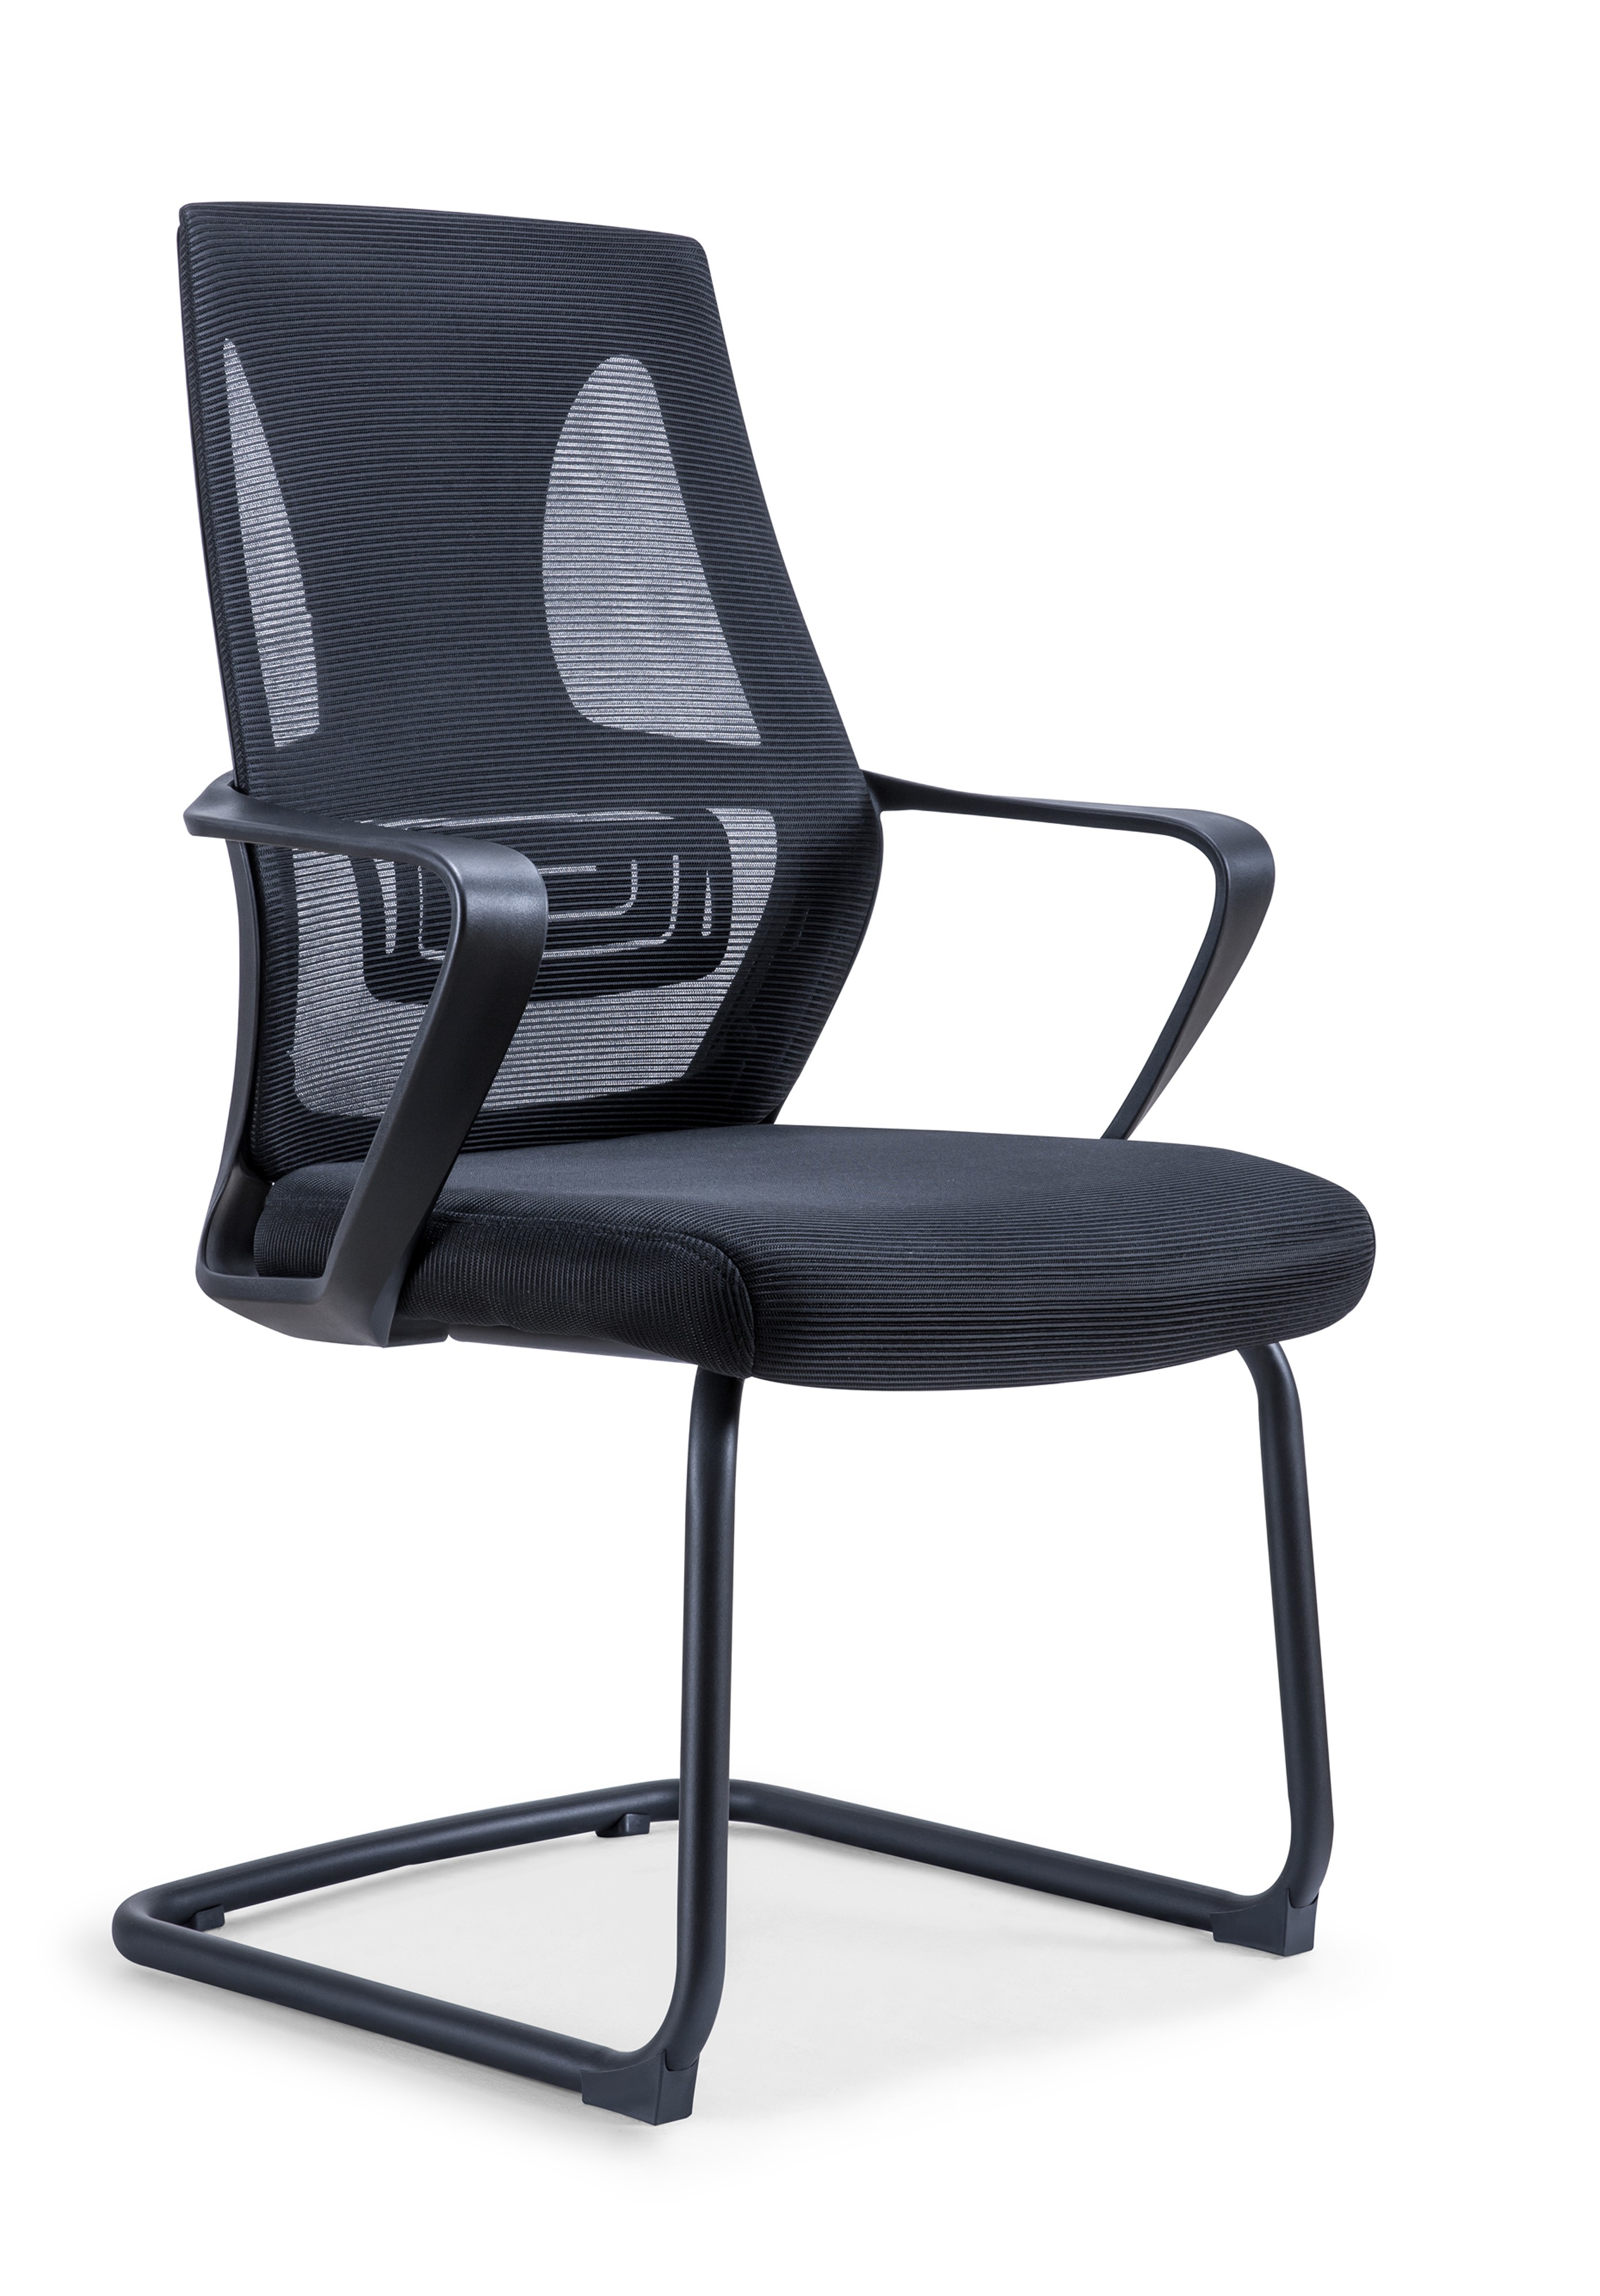 Newcity 544C Mobiliario de oficina de alta calidad Sala de reuniones comerciales Oficina de trabajo moderna Silla de malla Sala de espera Invitado Proveedor de sillas para visitantes Foshan China